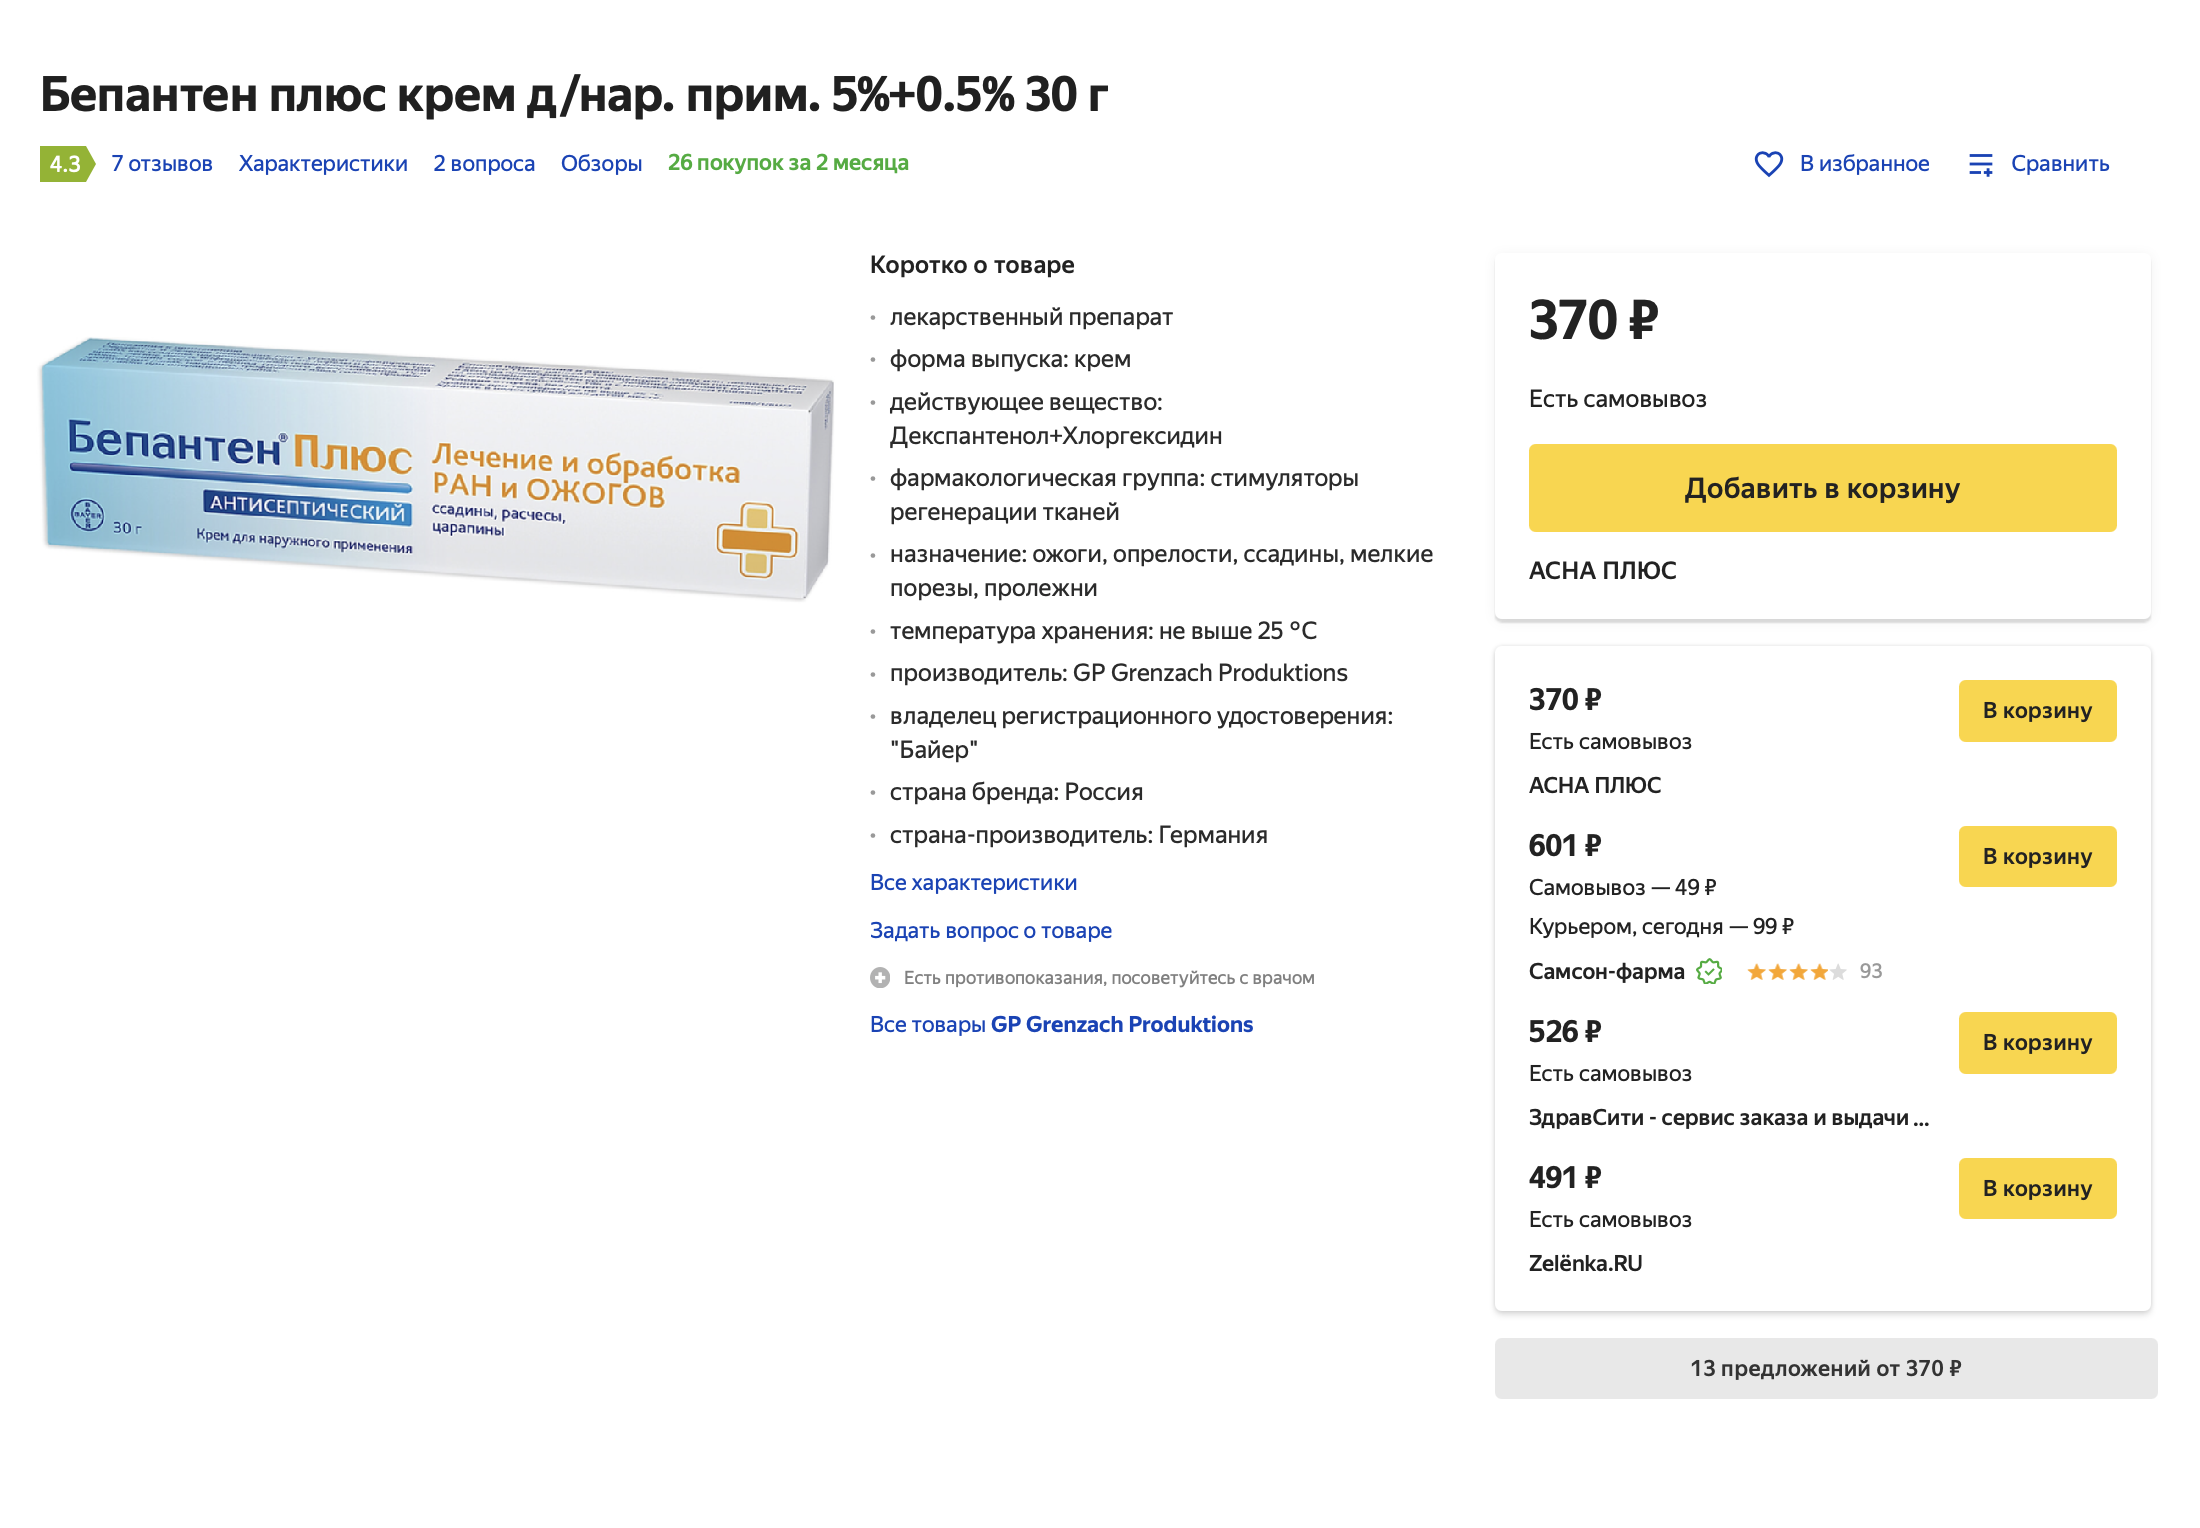 Крем «Бепантен плюс» в Москве стоит от 370 ₽. Источник: «Яндекс-маркет»